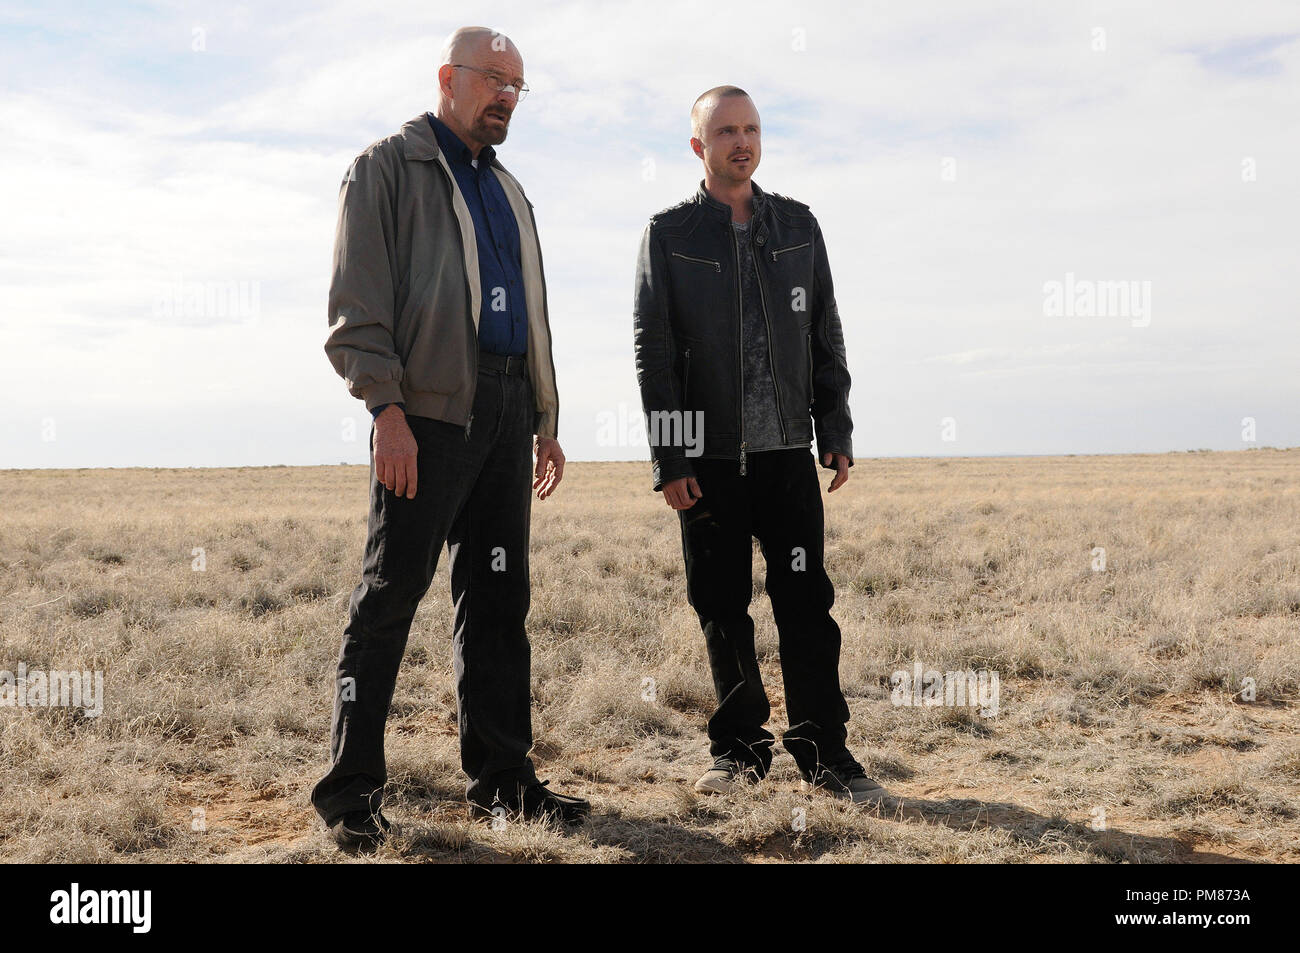 Walter White (Bryan Cranston) et Jesse Pinkman (Aaron Paul) - Breaking Bad  - Saison 5, épisode 1 - Crédit photo : Ursula Coyote/AMC Photo Stock - Alamy